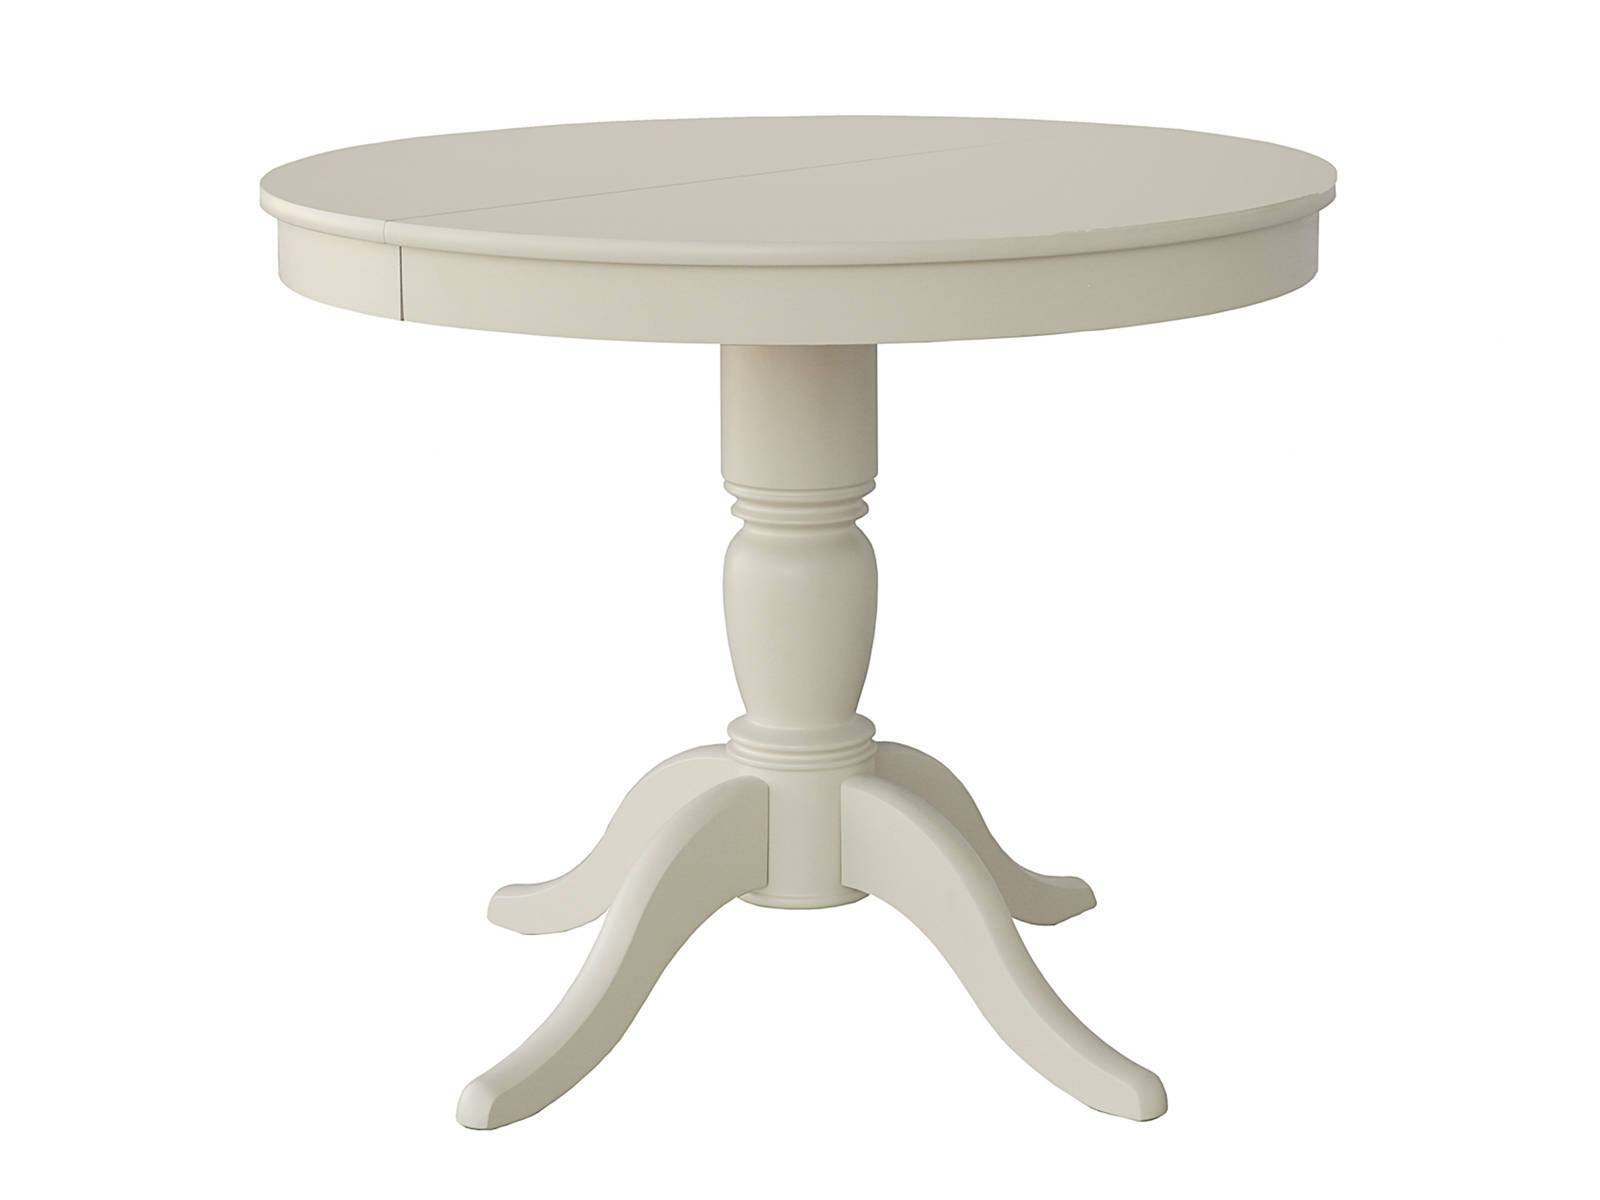 Кухонный стол Фламинго 1 Белый, Массив Бук стол кухонный прямоугольный 1 1х0 73 м белый бук table 110 15356